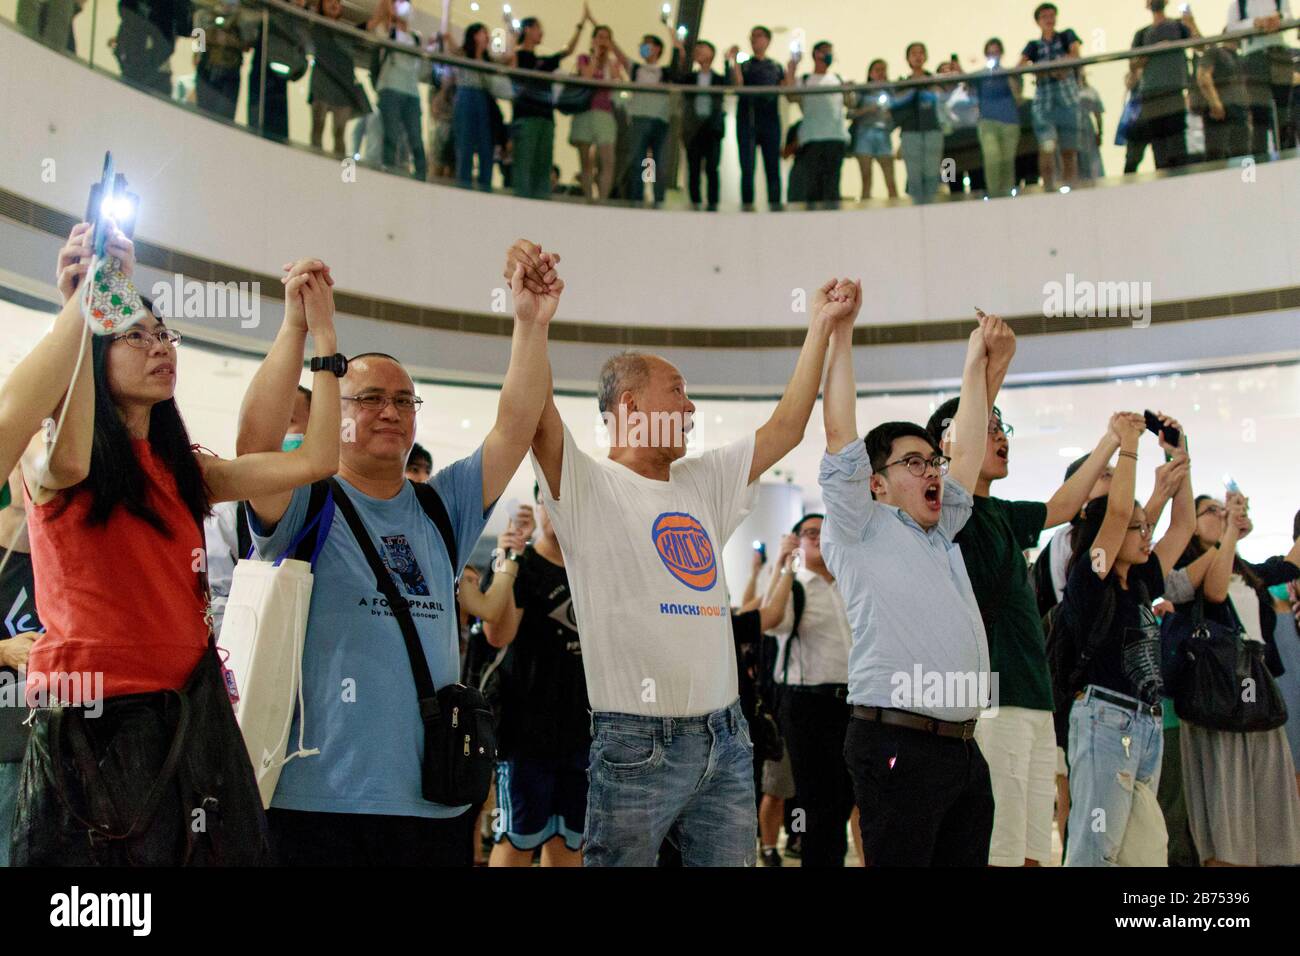 Hong Kongers chante "gloire à Hong Kong" dans la SFI, Centre financier international. Ils ont de "Cinq demandes, pas une de moins" et d'autres slogans anti-policiers. De nombreux centres commerciaux ont les mêmes activités aujourd'hui. Banque D'Images